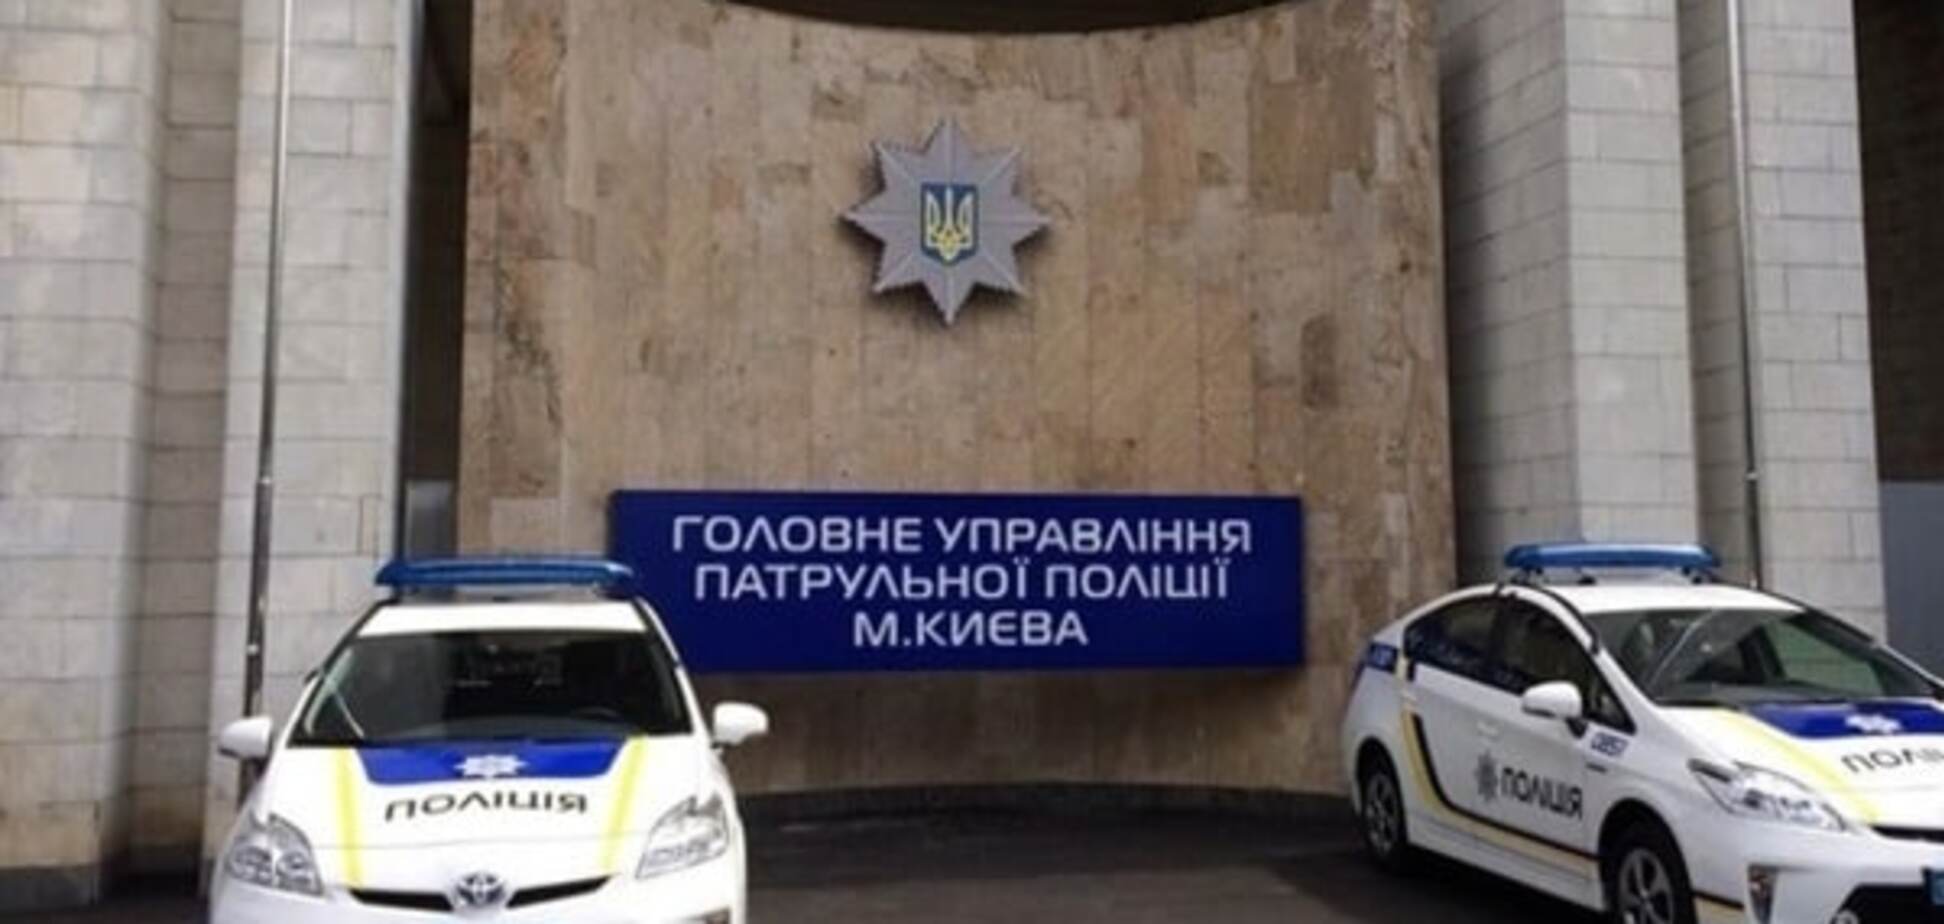 Прокуратура нагрянула с обысками в офис полиции Киева